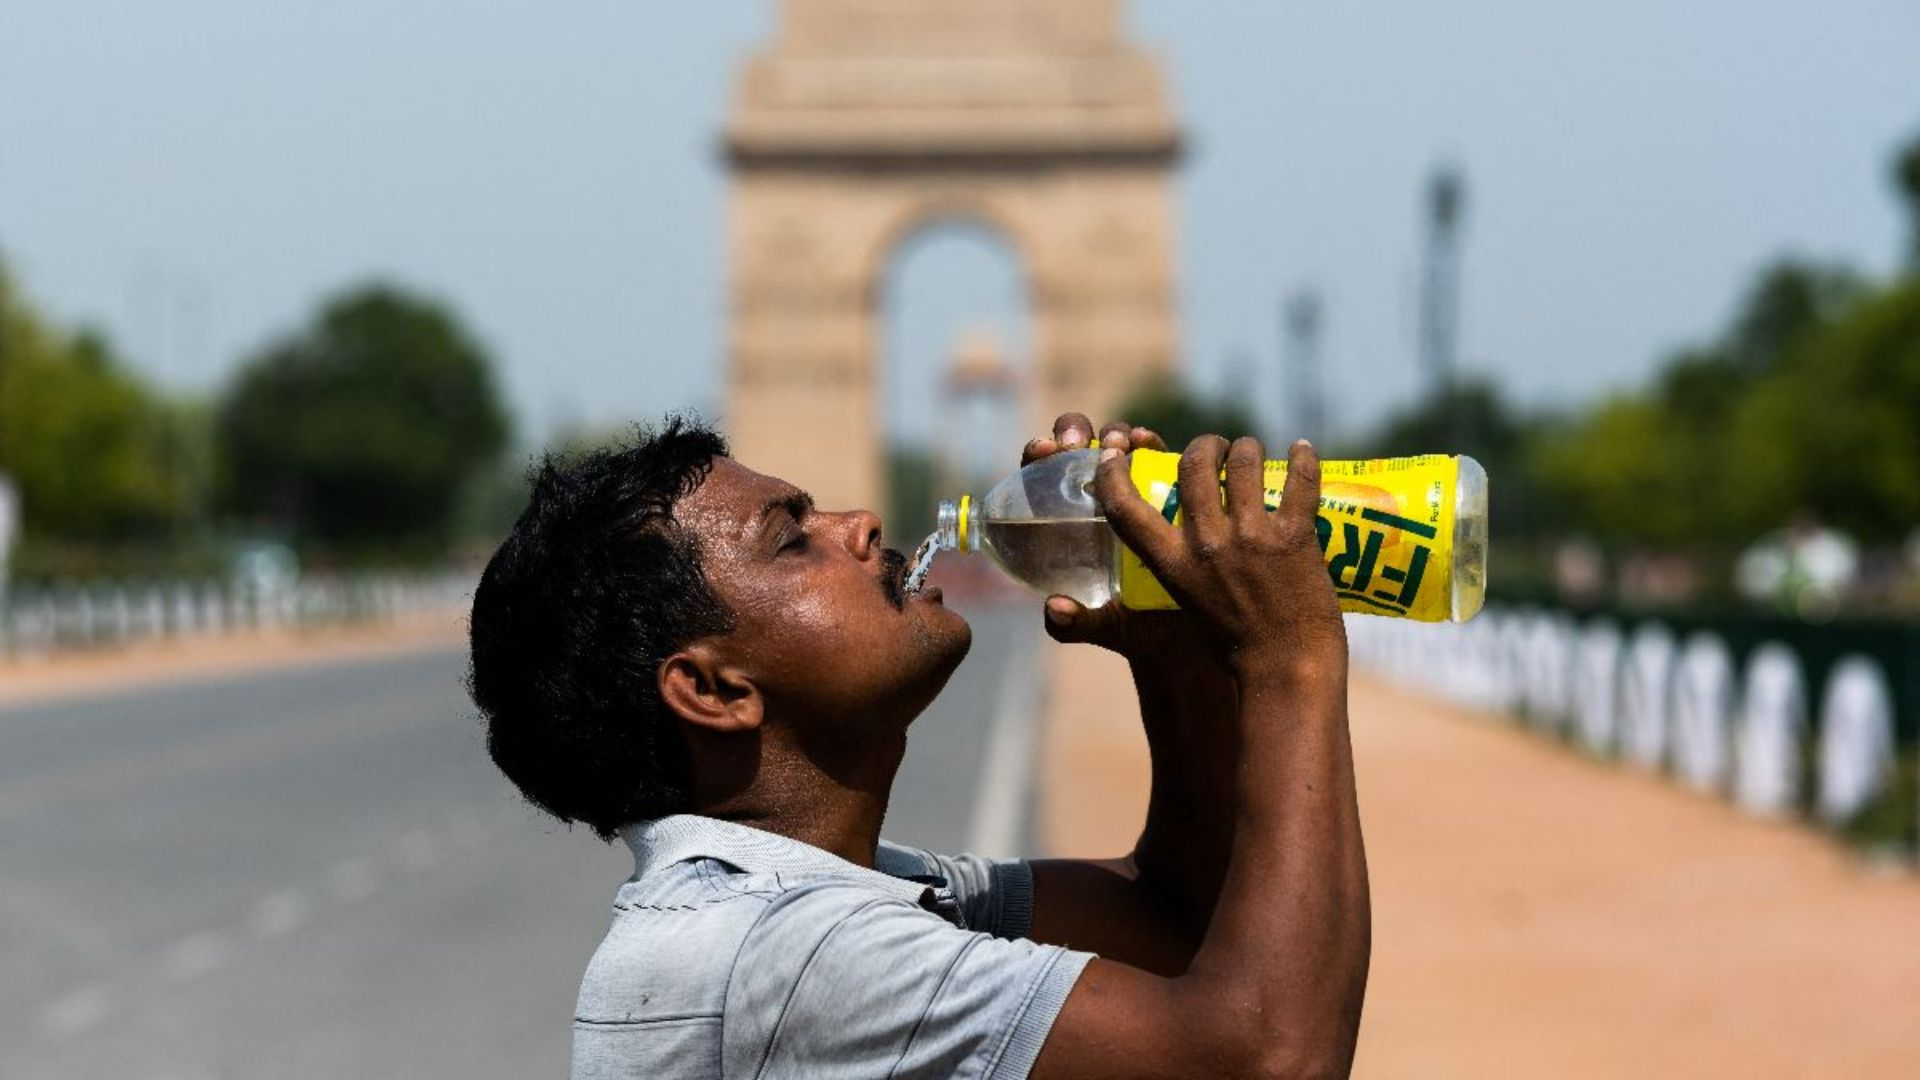 Delhi Records Highest-Ever Temperature at 52.3 Degrees Celsius